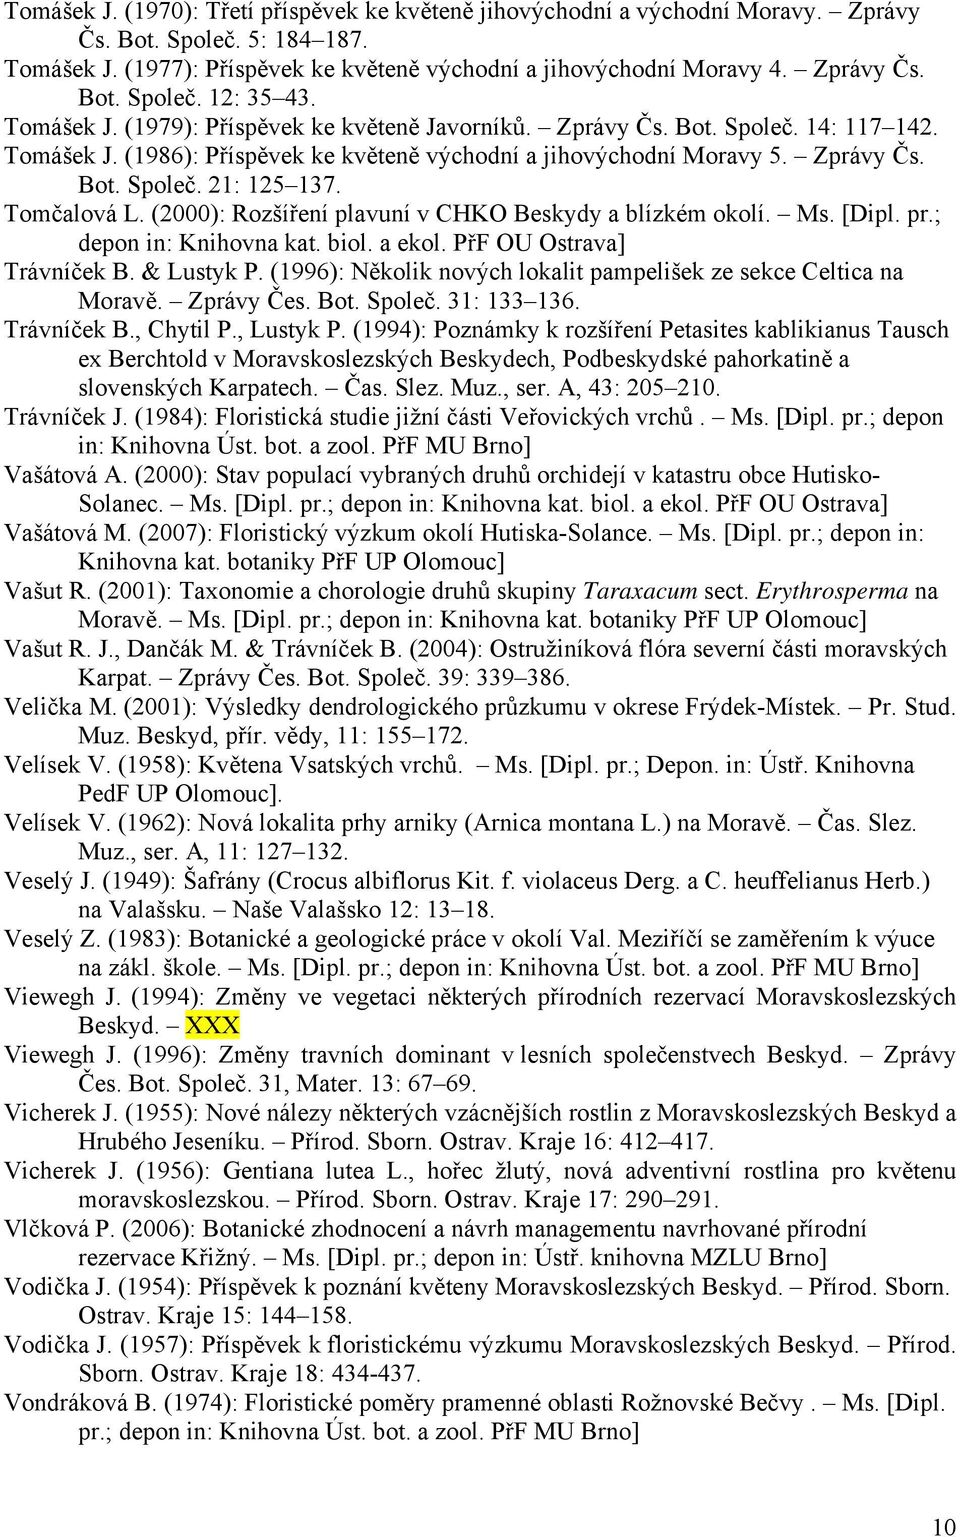 Tomčalová L. (2000): Rozšíření plavuní v CHKO Beskydy a blízkém okolí. Ms. [Dipl. pr.; depon in: Knihovna kat. biol. a ekol. PřF OU Ostrava] Trávníček B. & Lustyk P.